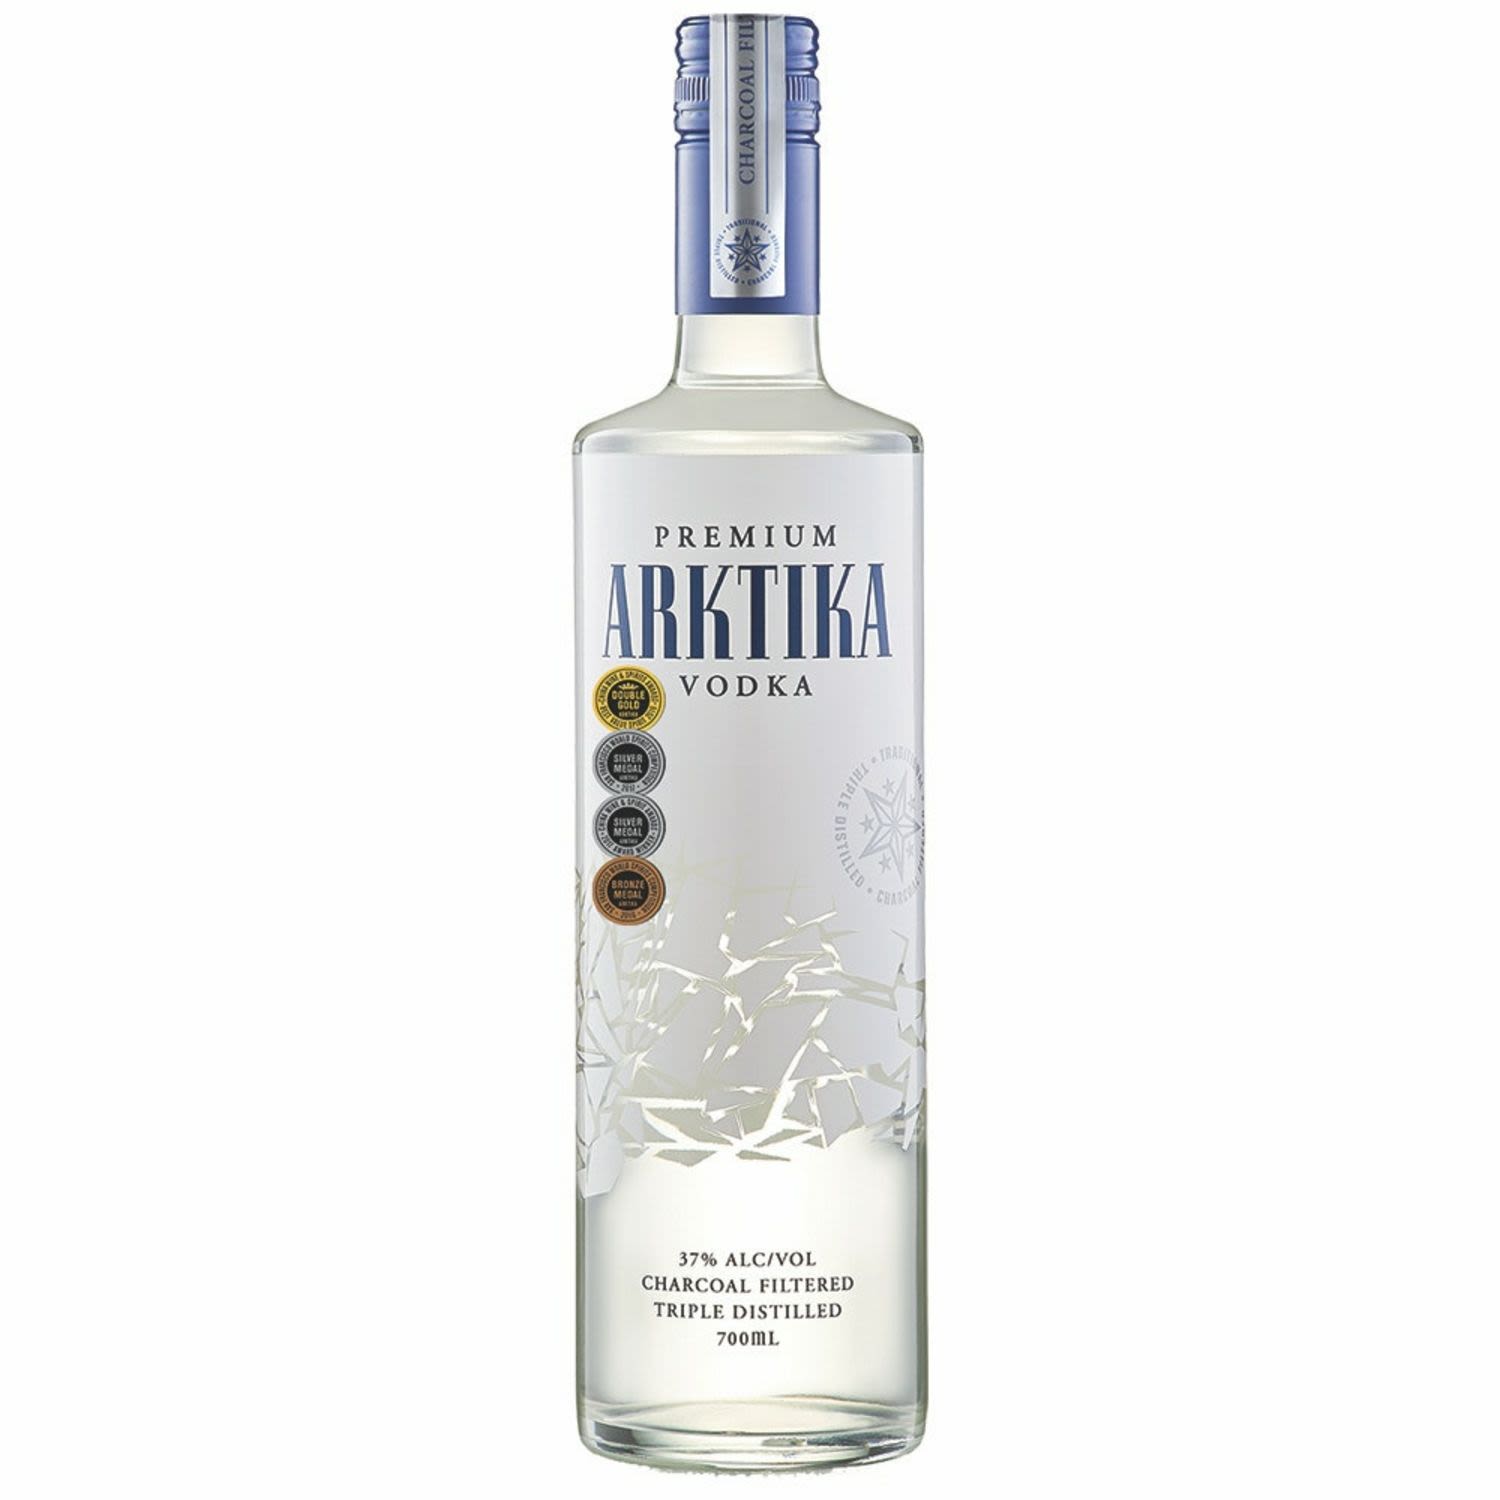 Arktika Vodka 700mL Bottle